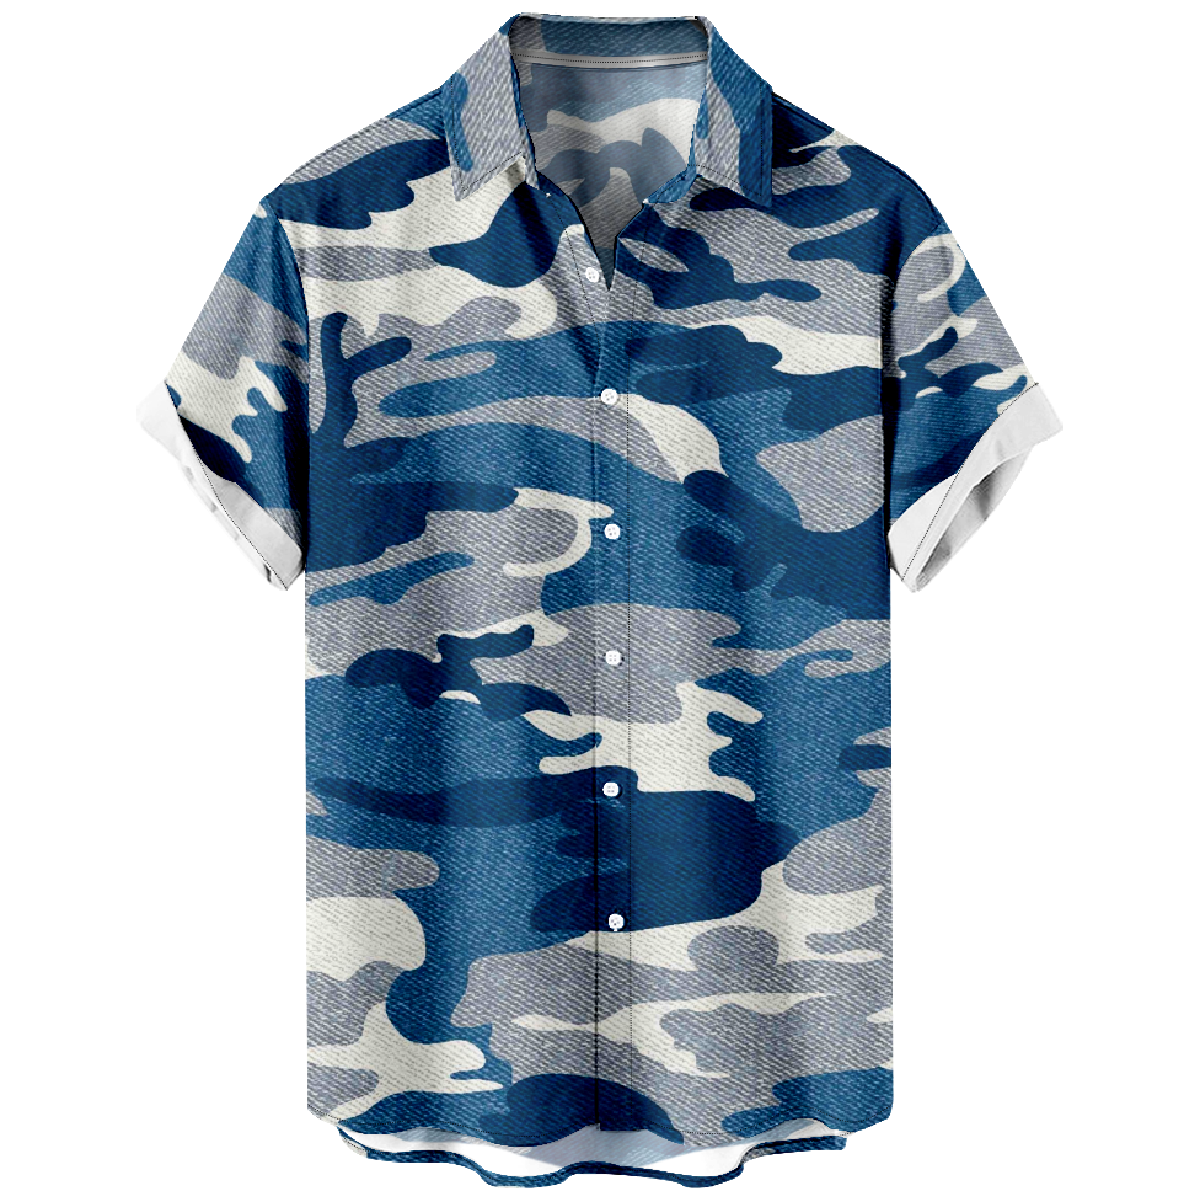 Camo Hawaiian Shirt Mens Short Sleeve Shirt Summer Button Shirt uhoodie Tops